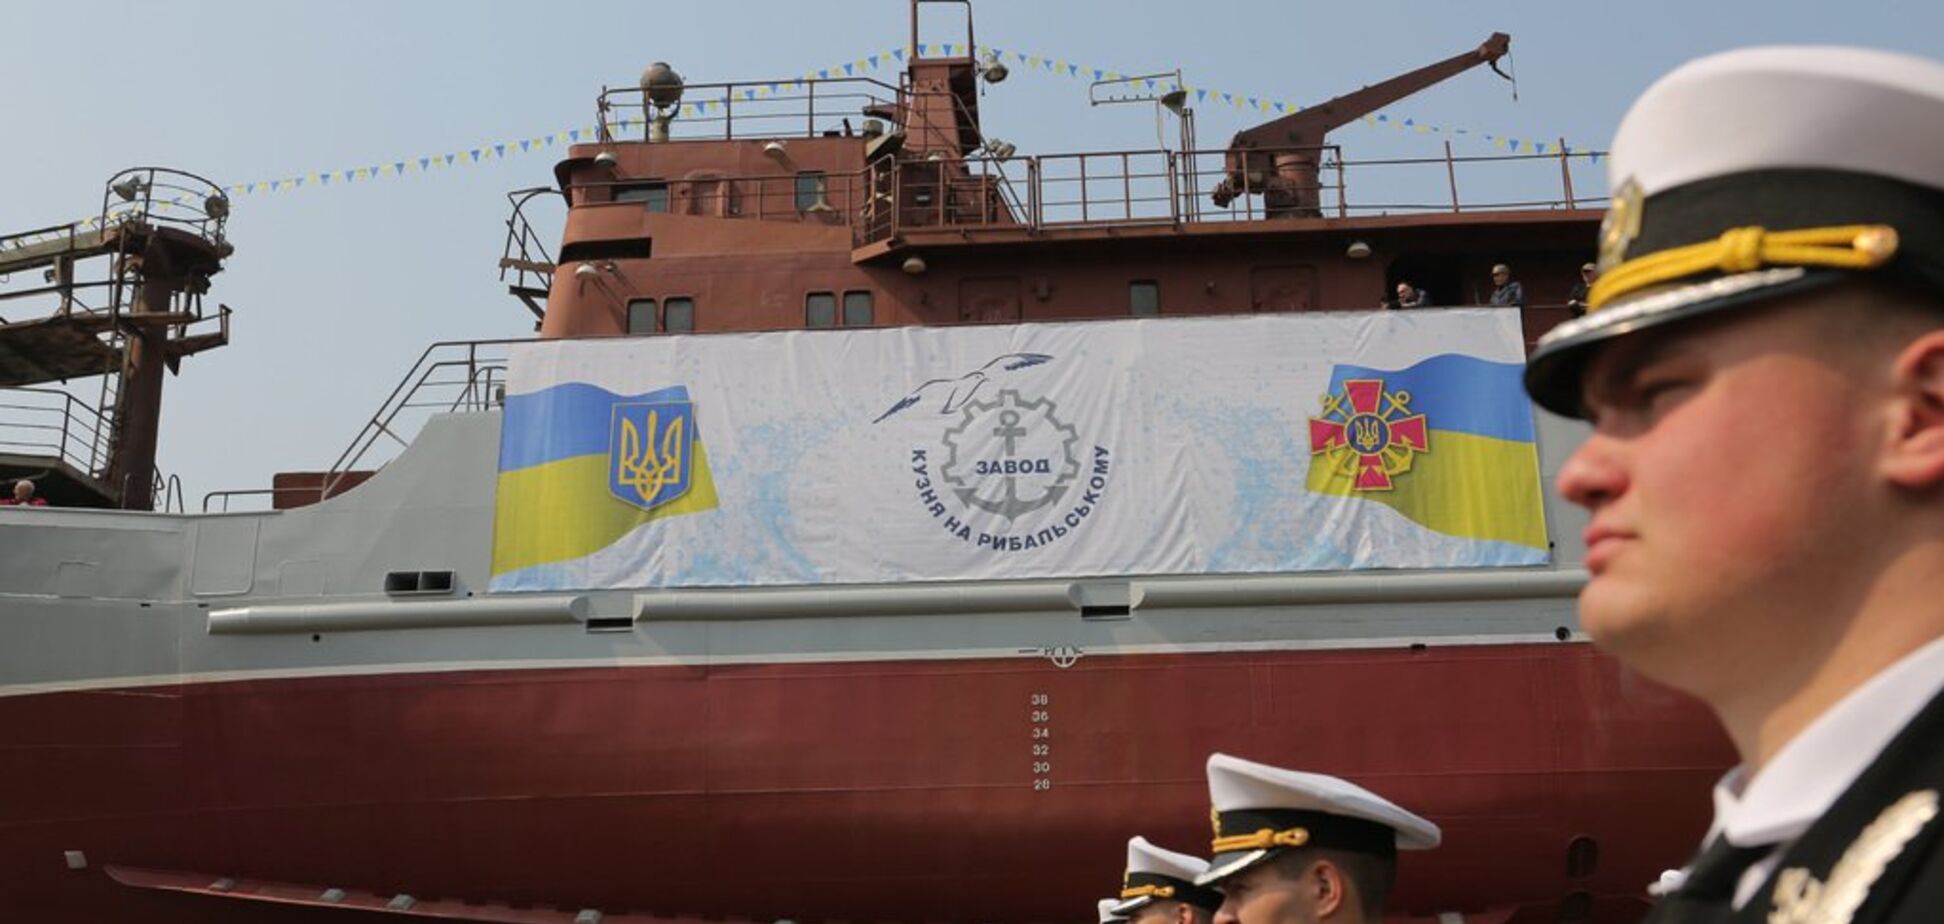 ВМС України отримали унікальний розвідкорабель